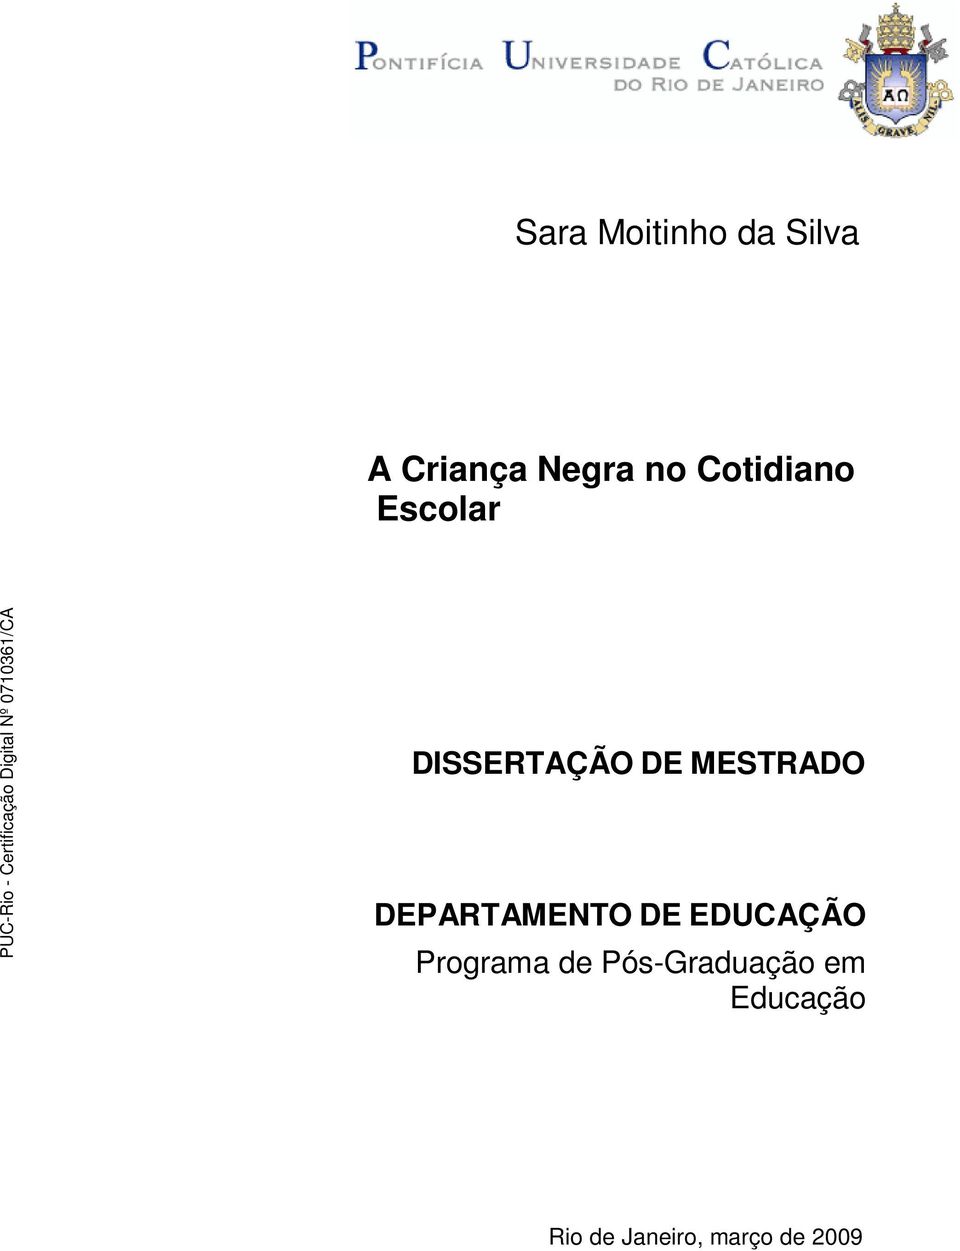 DEPARTAMENTO DE EDUCAÇÃO Programa de